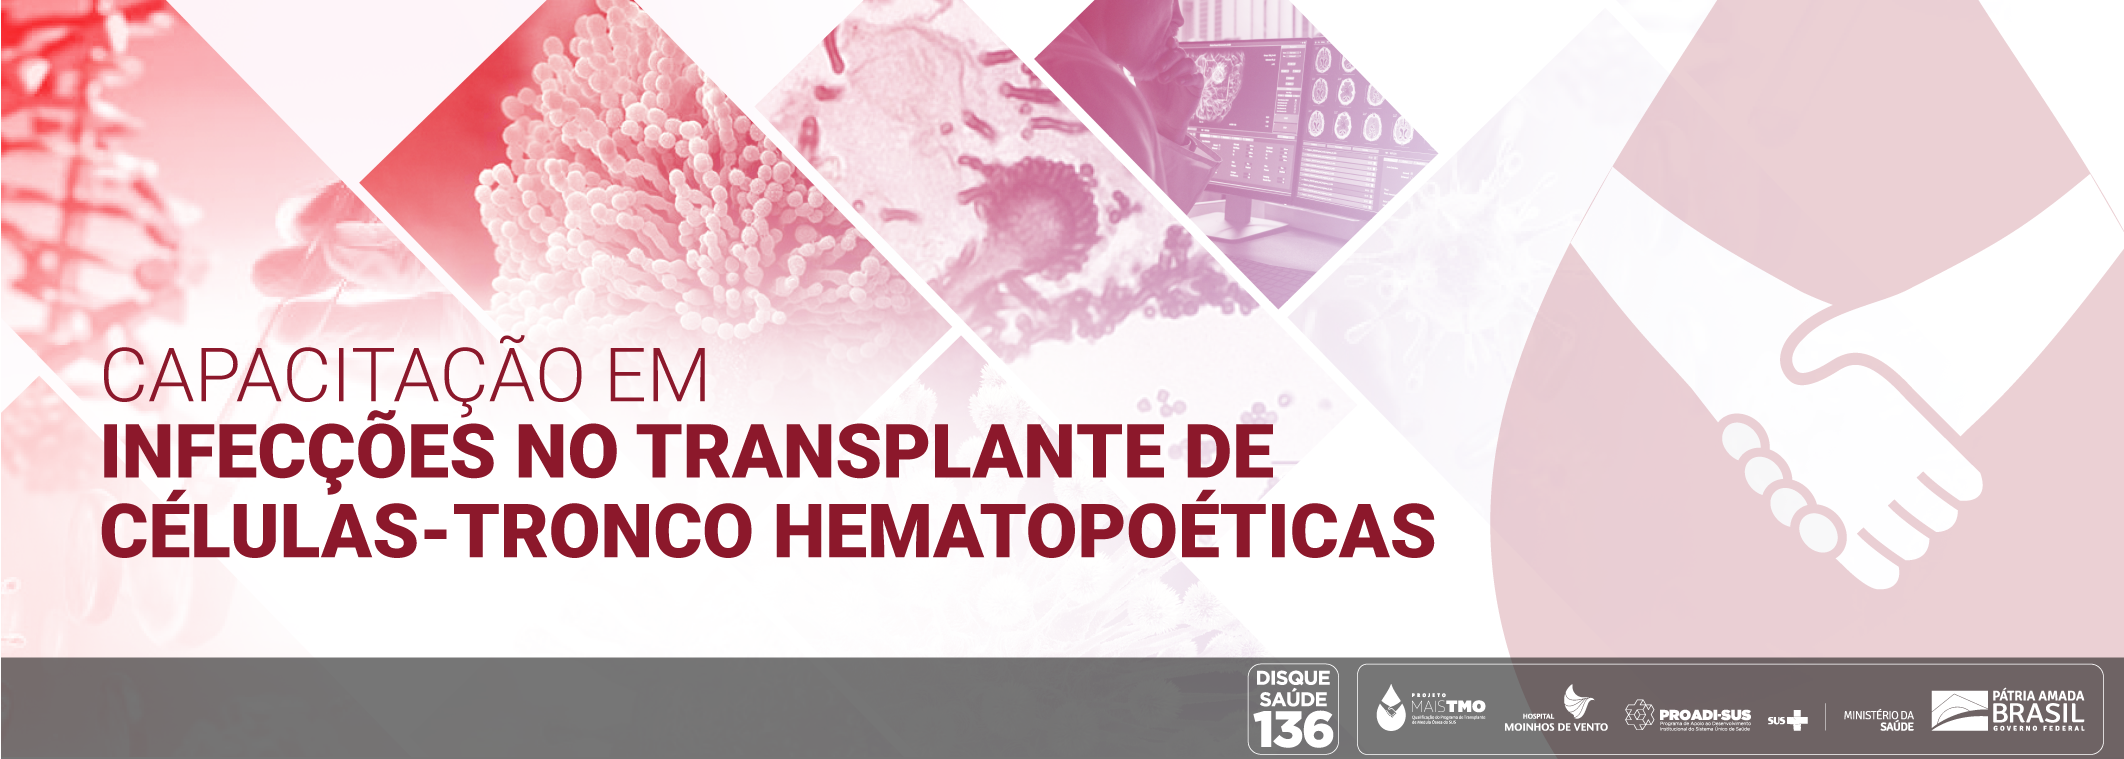 Capacitação em infecções no transplante de células-tronco hematopoéticas (TCTH) TMO_CITCH_2020